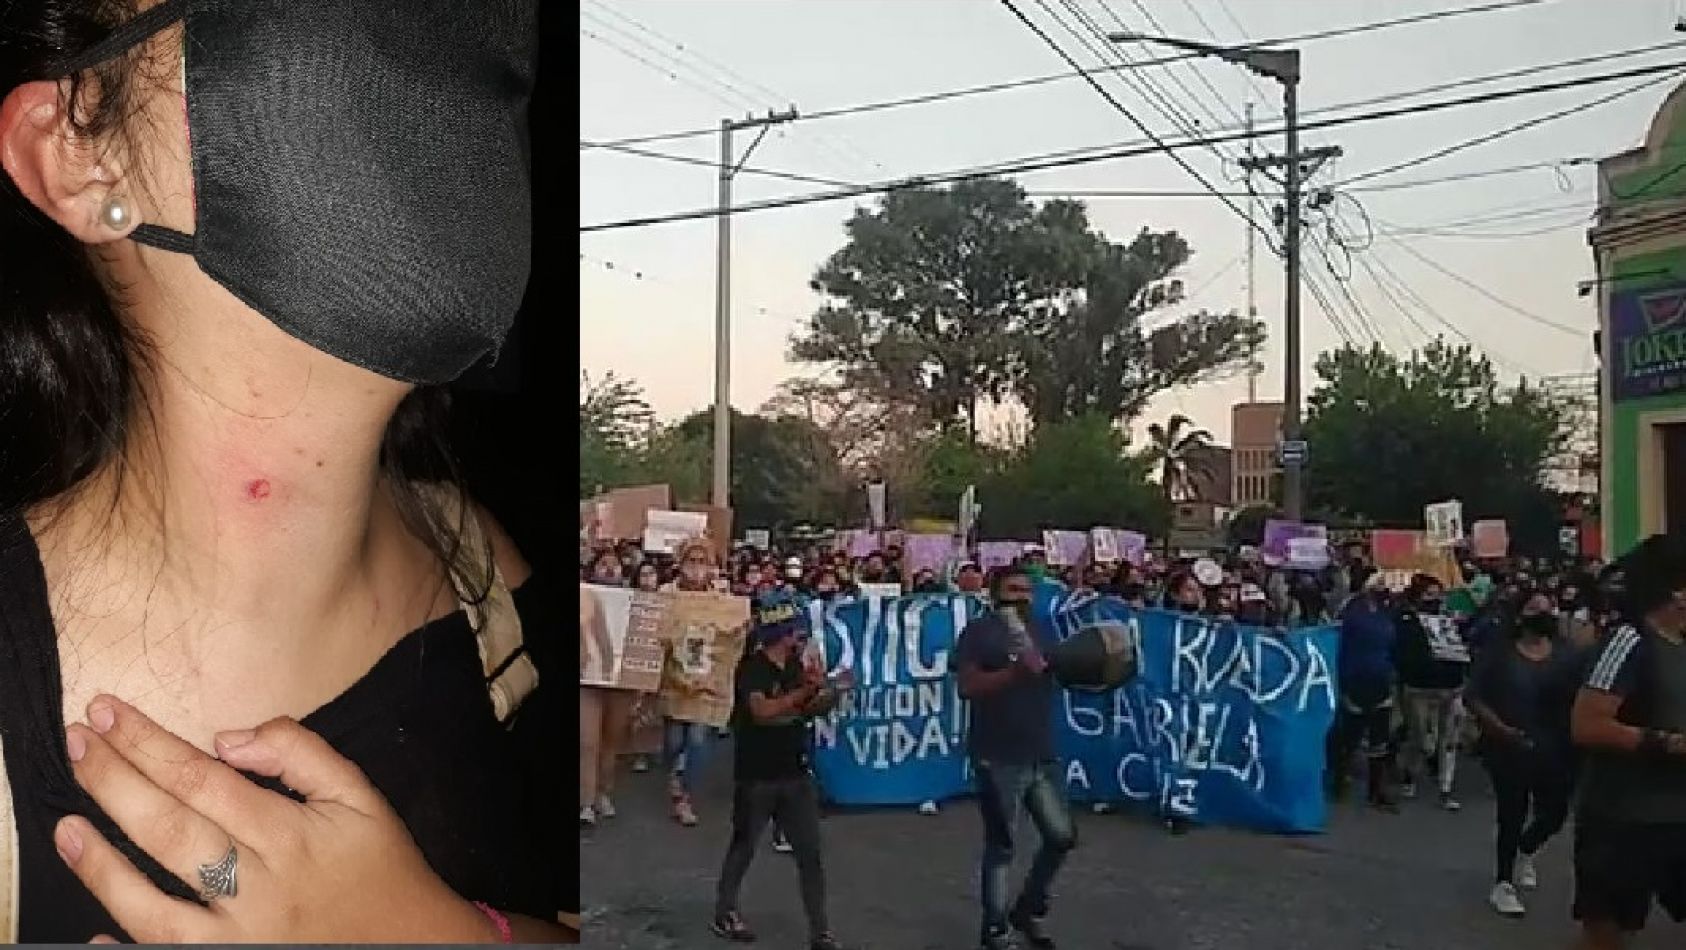 La masiva marcha por Iara Rueda culminó en violenta represión policial